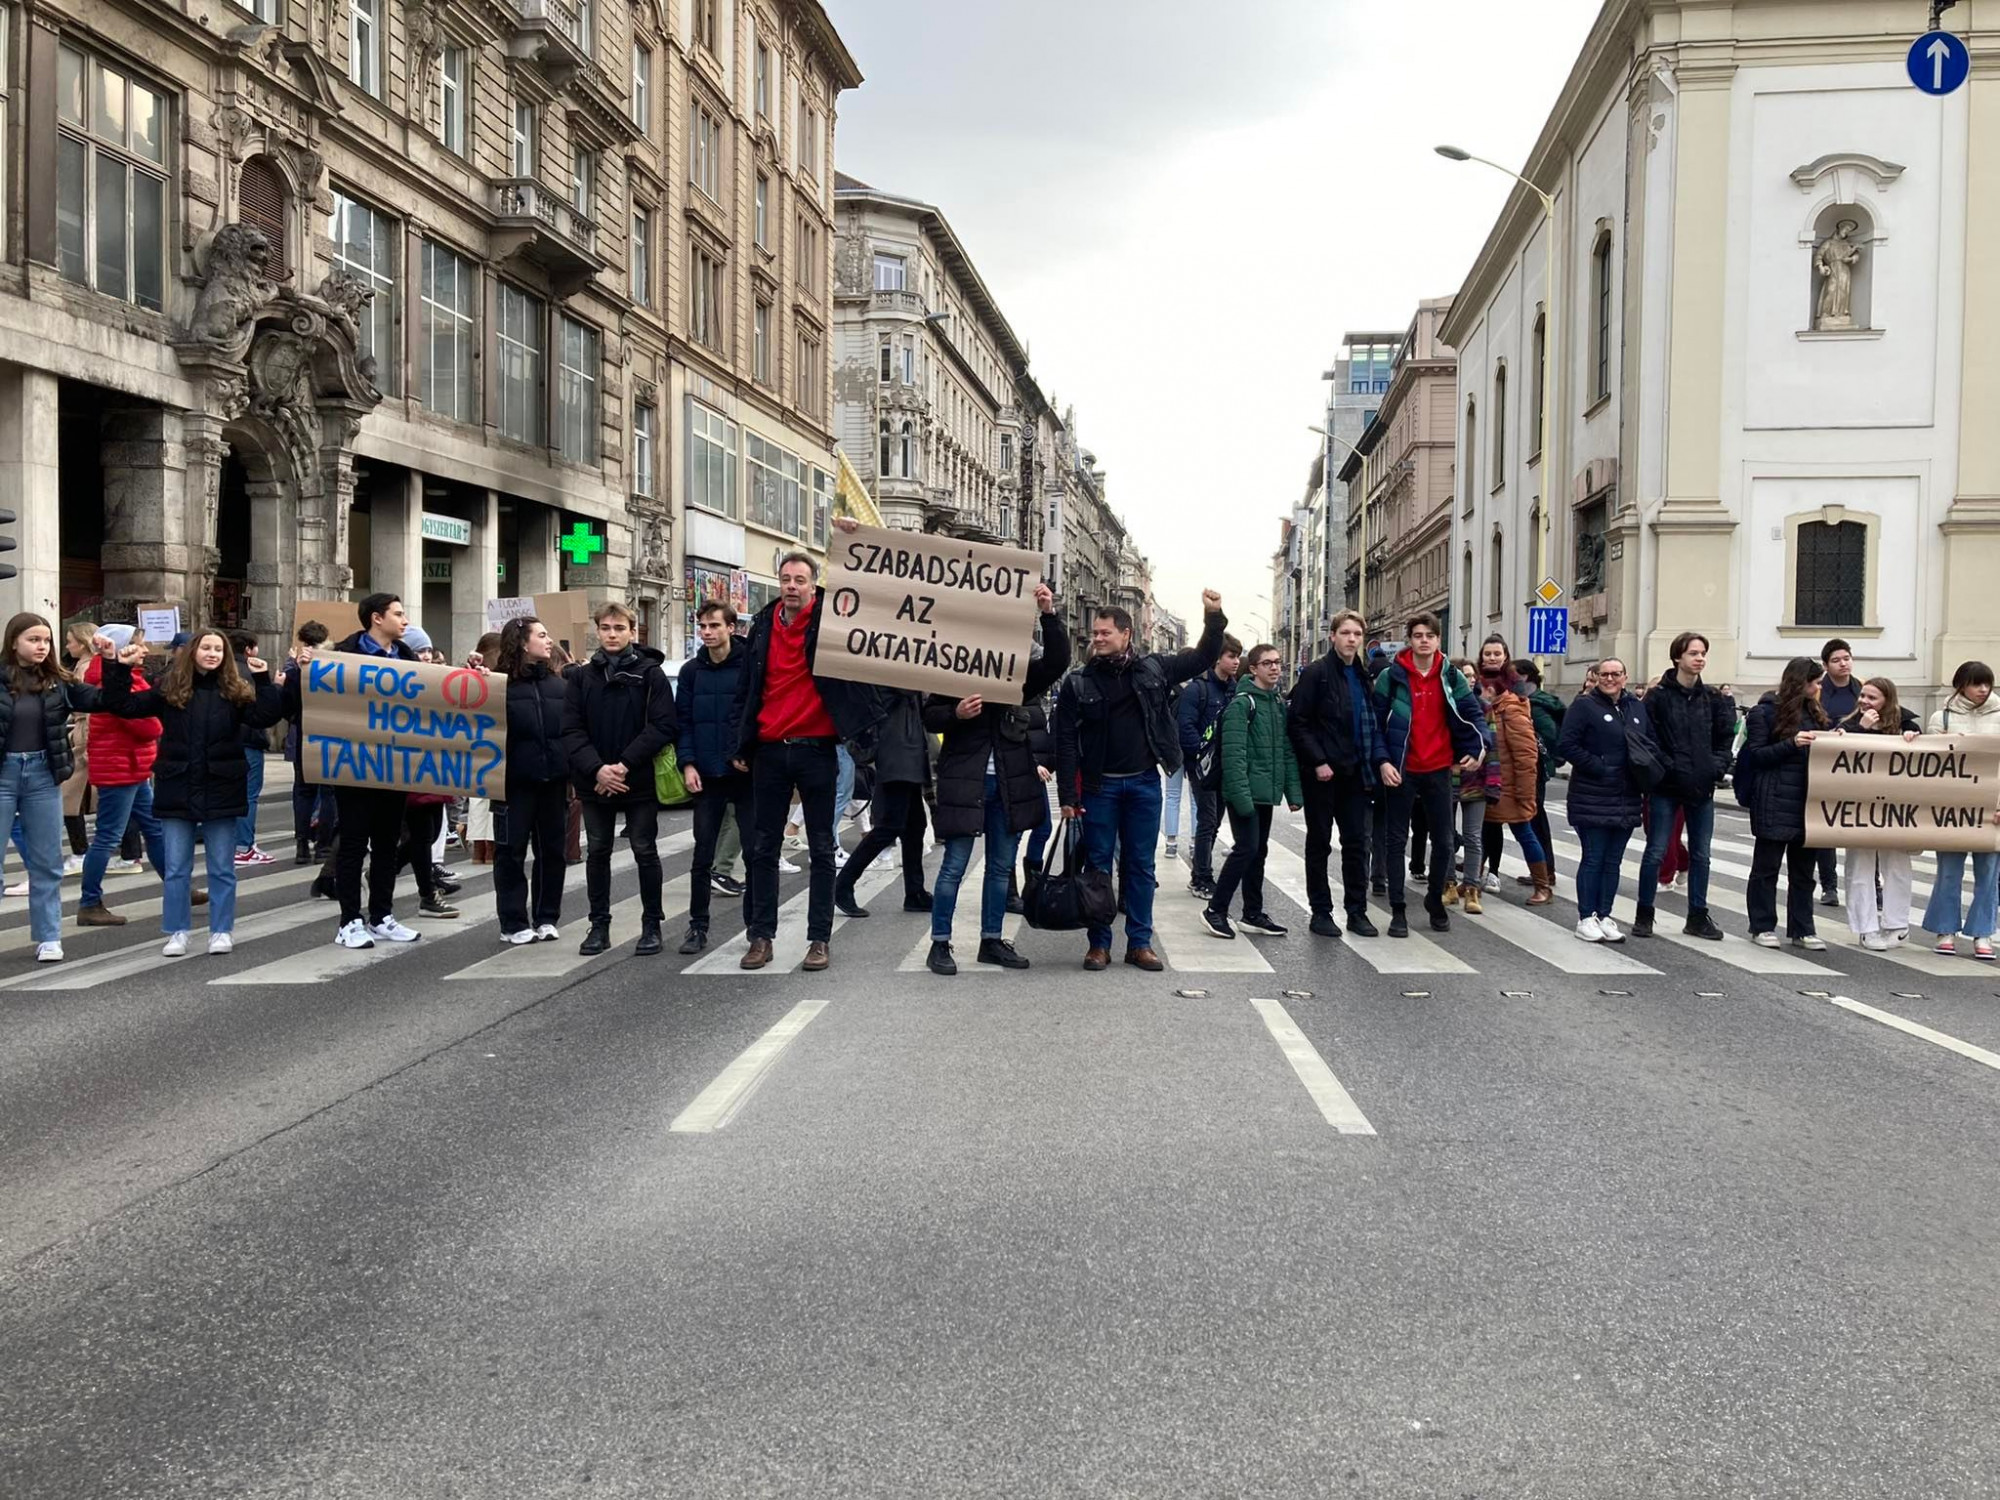 A Ferenciek tere zebráján tiltakoztak szerda reggel a tanárokkal szolidáris diákok